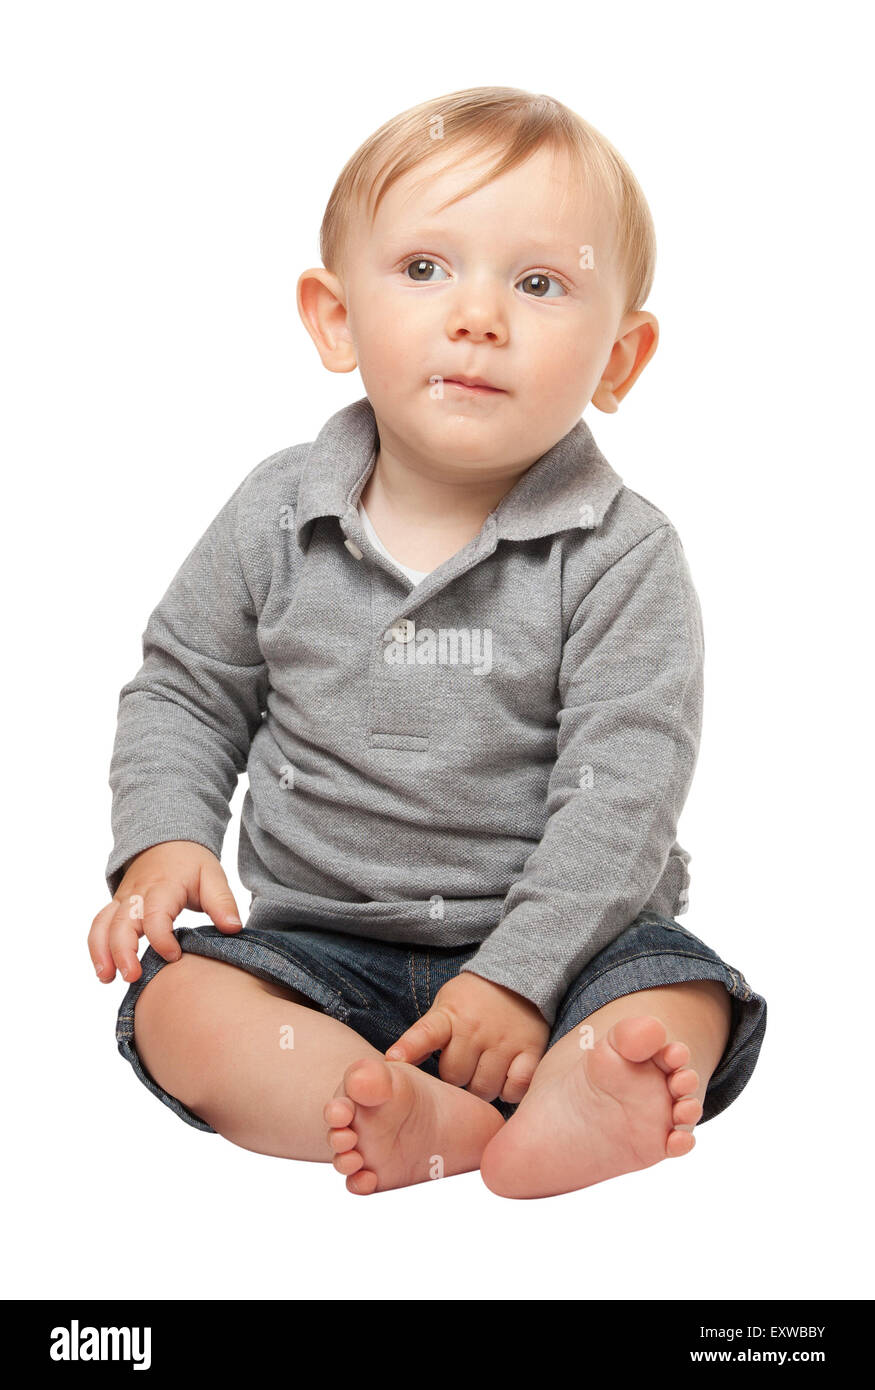 child portrait isolated on white background Stock Photo